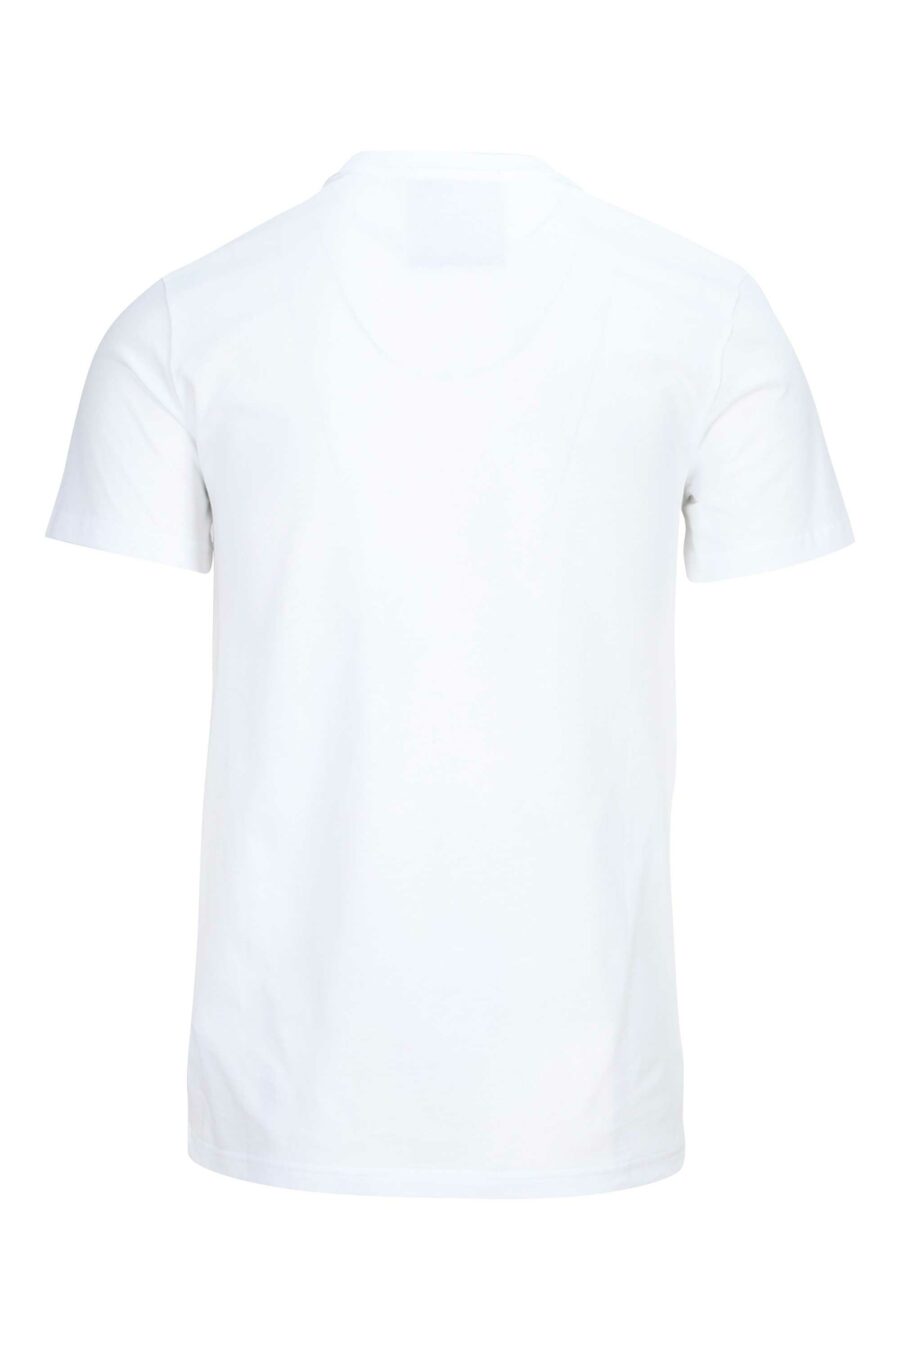 T-shirt branca de algodão orgânico com maxilogue preto - 889316649031 1